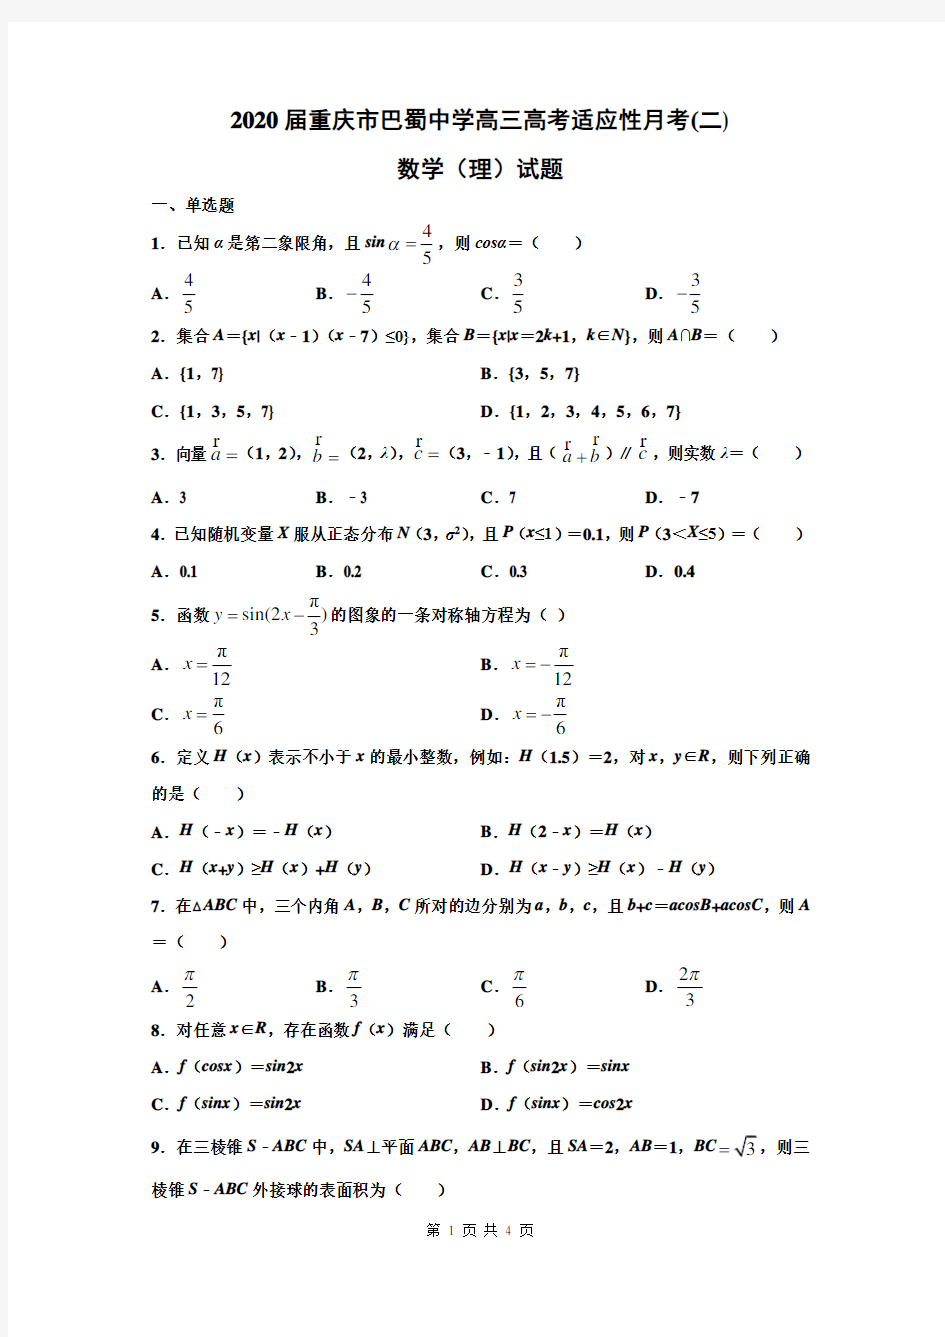 重庆巴蜀中学2020数学(二)理